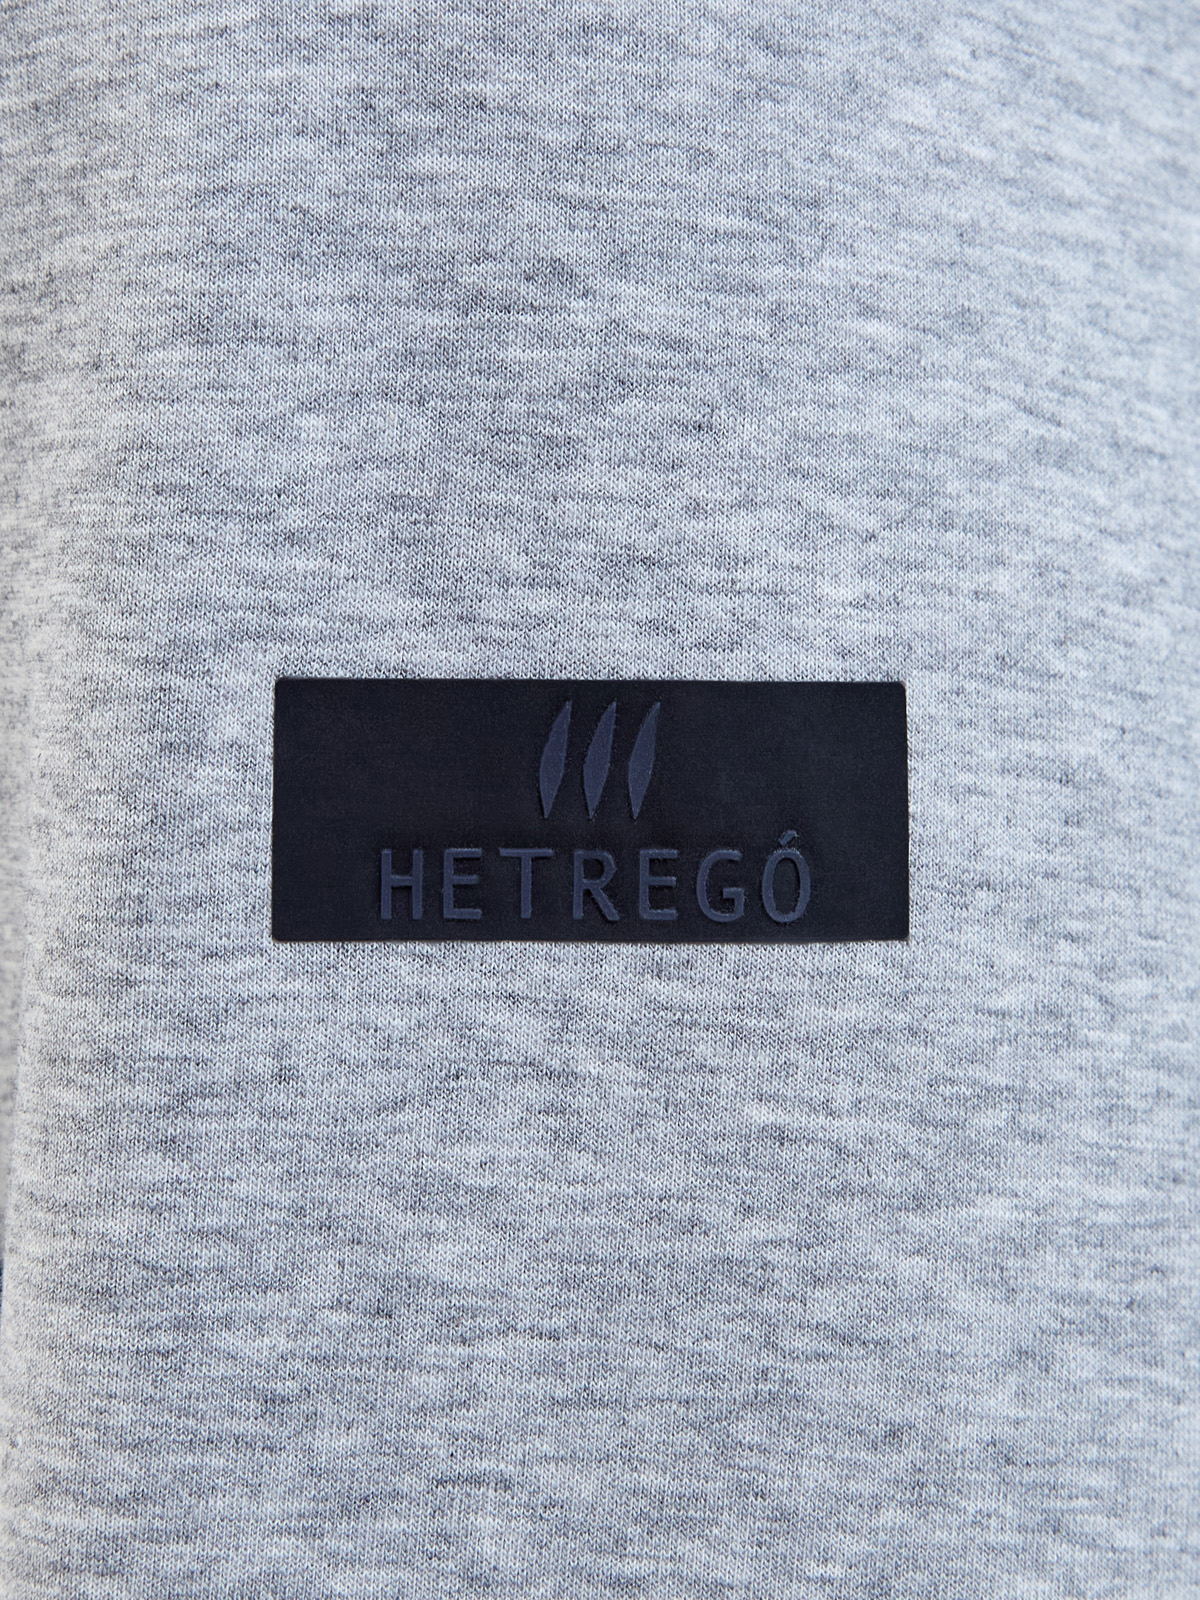 Комбинированная куртка из нейлона и хлопка с пуховым утеплителем HETREGO, цвет мульти, размер L;XL;2XL;3XL;4XL - фото 5